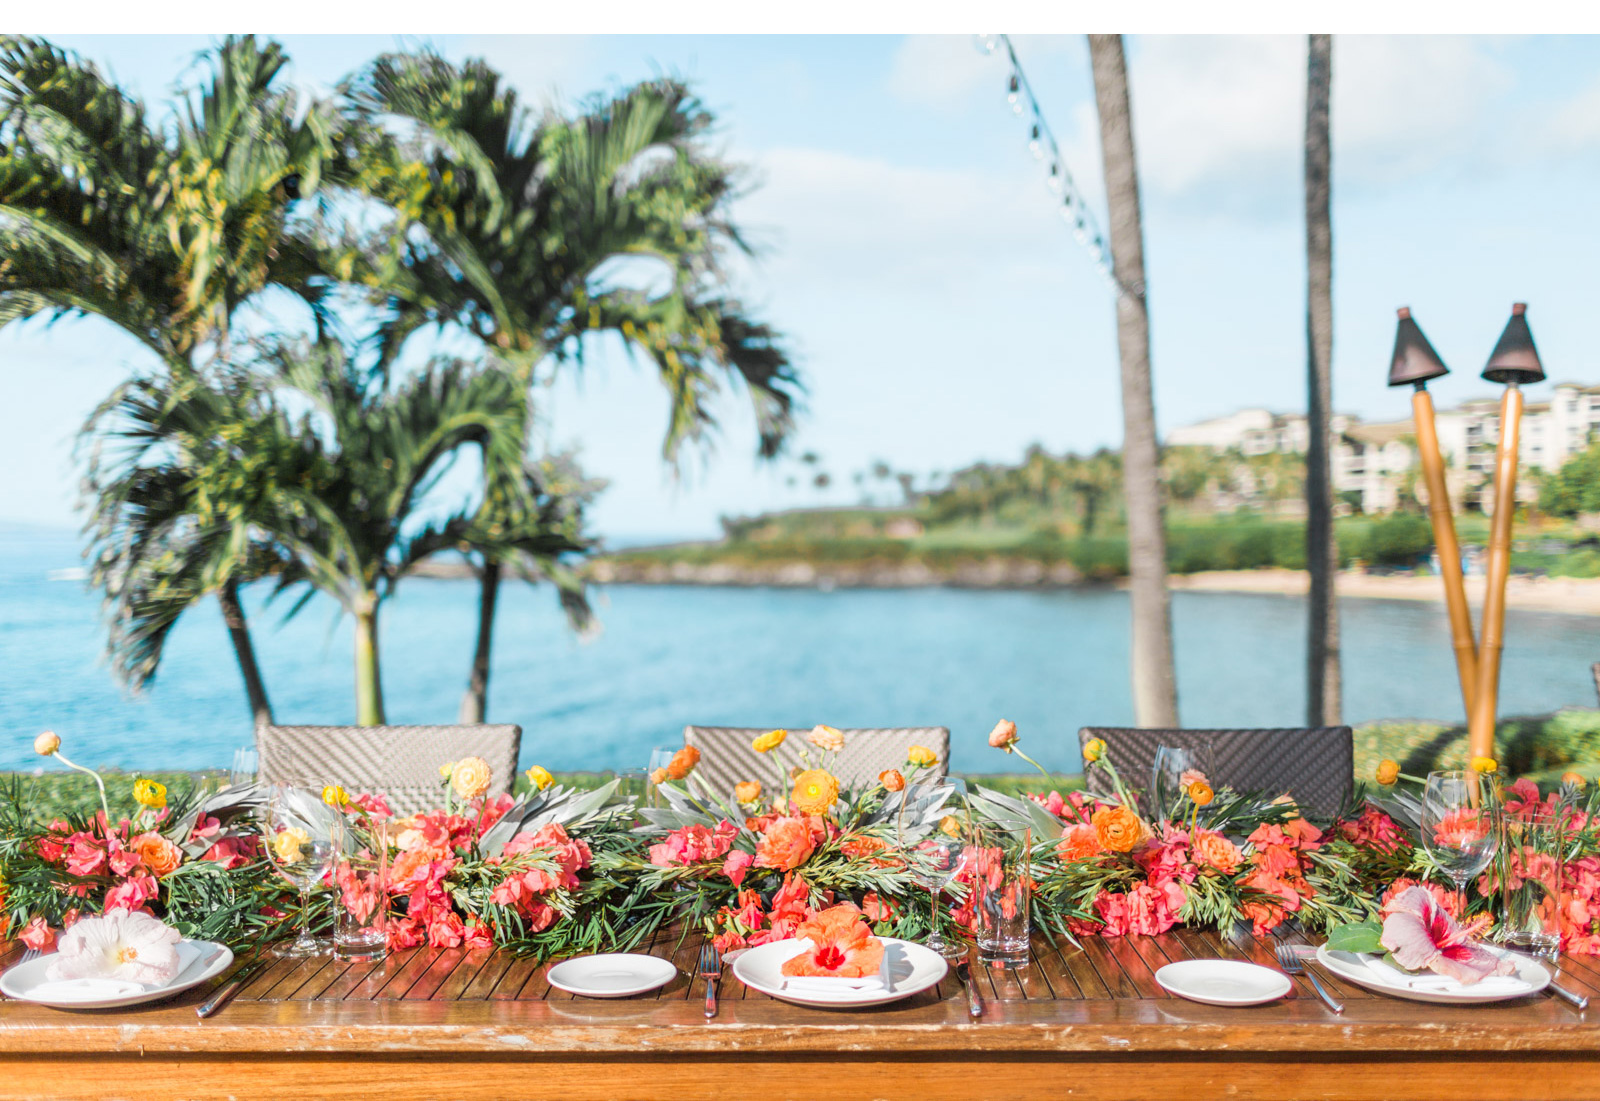 Natalie-Schutt-Photography---Maui-Destination-Wedding-Photographer_06.jpg